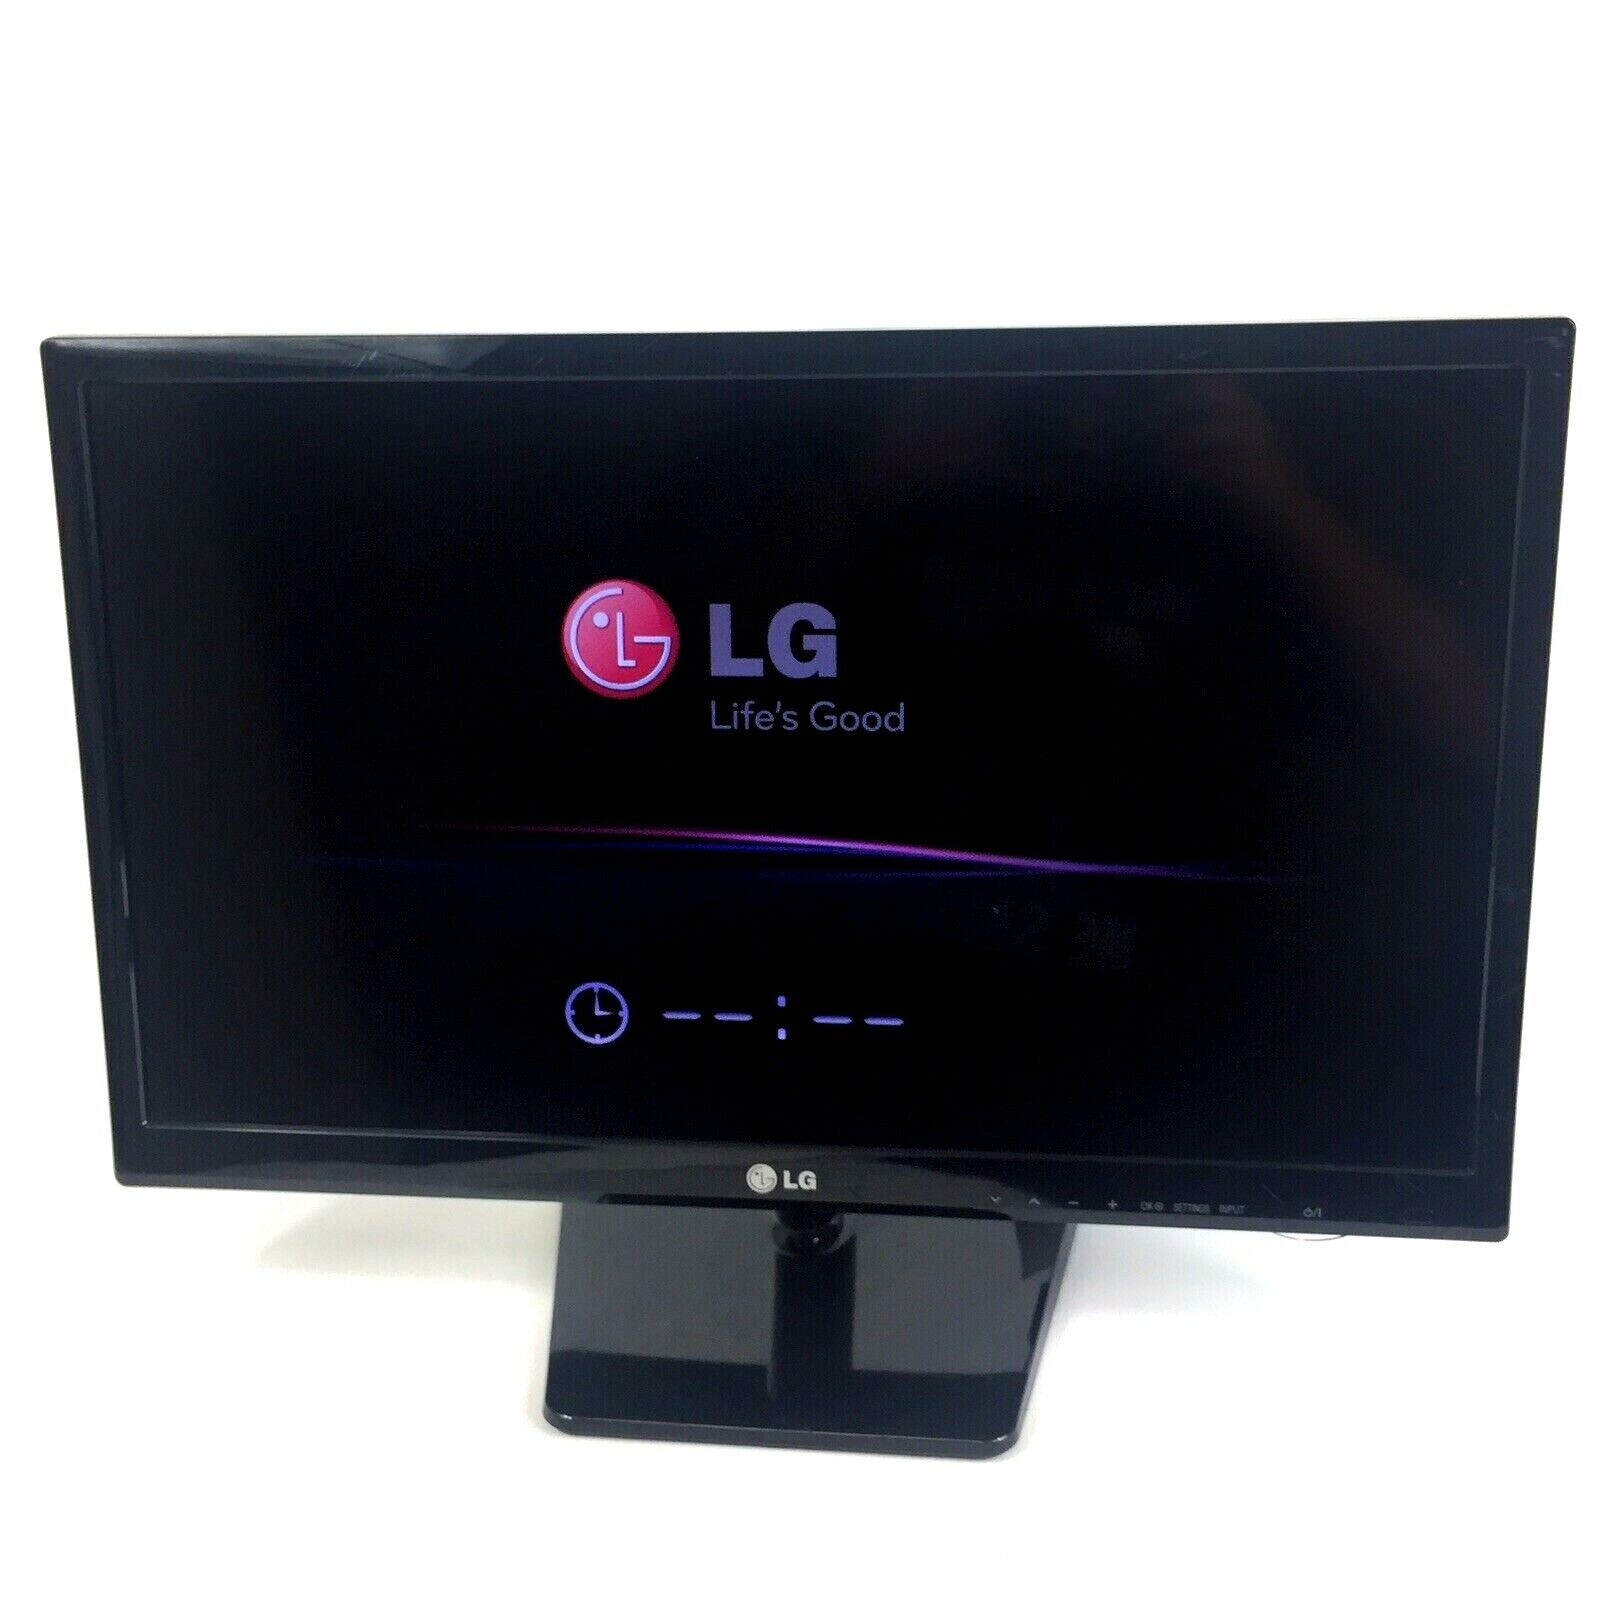 LG 24 inch TV Monitor Widescreen LED HD TV 720p HDMI VGA 60Hz No Remote